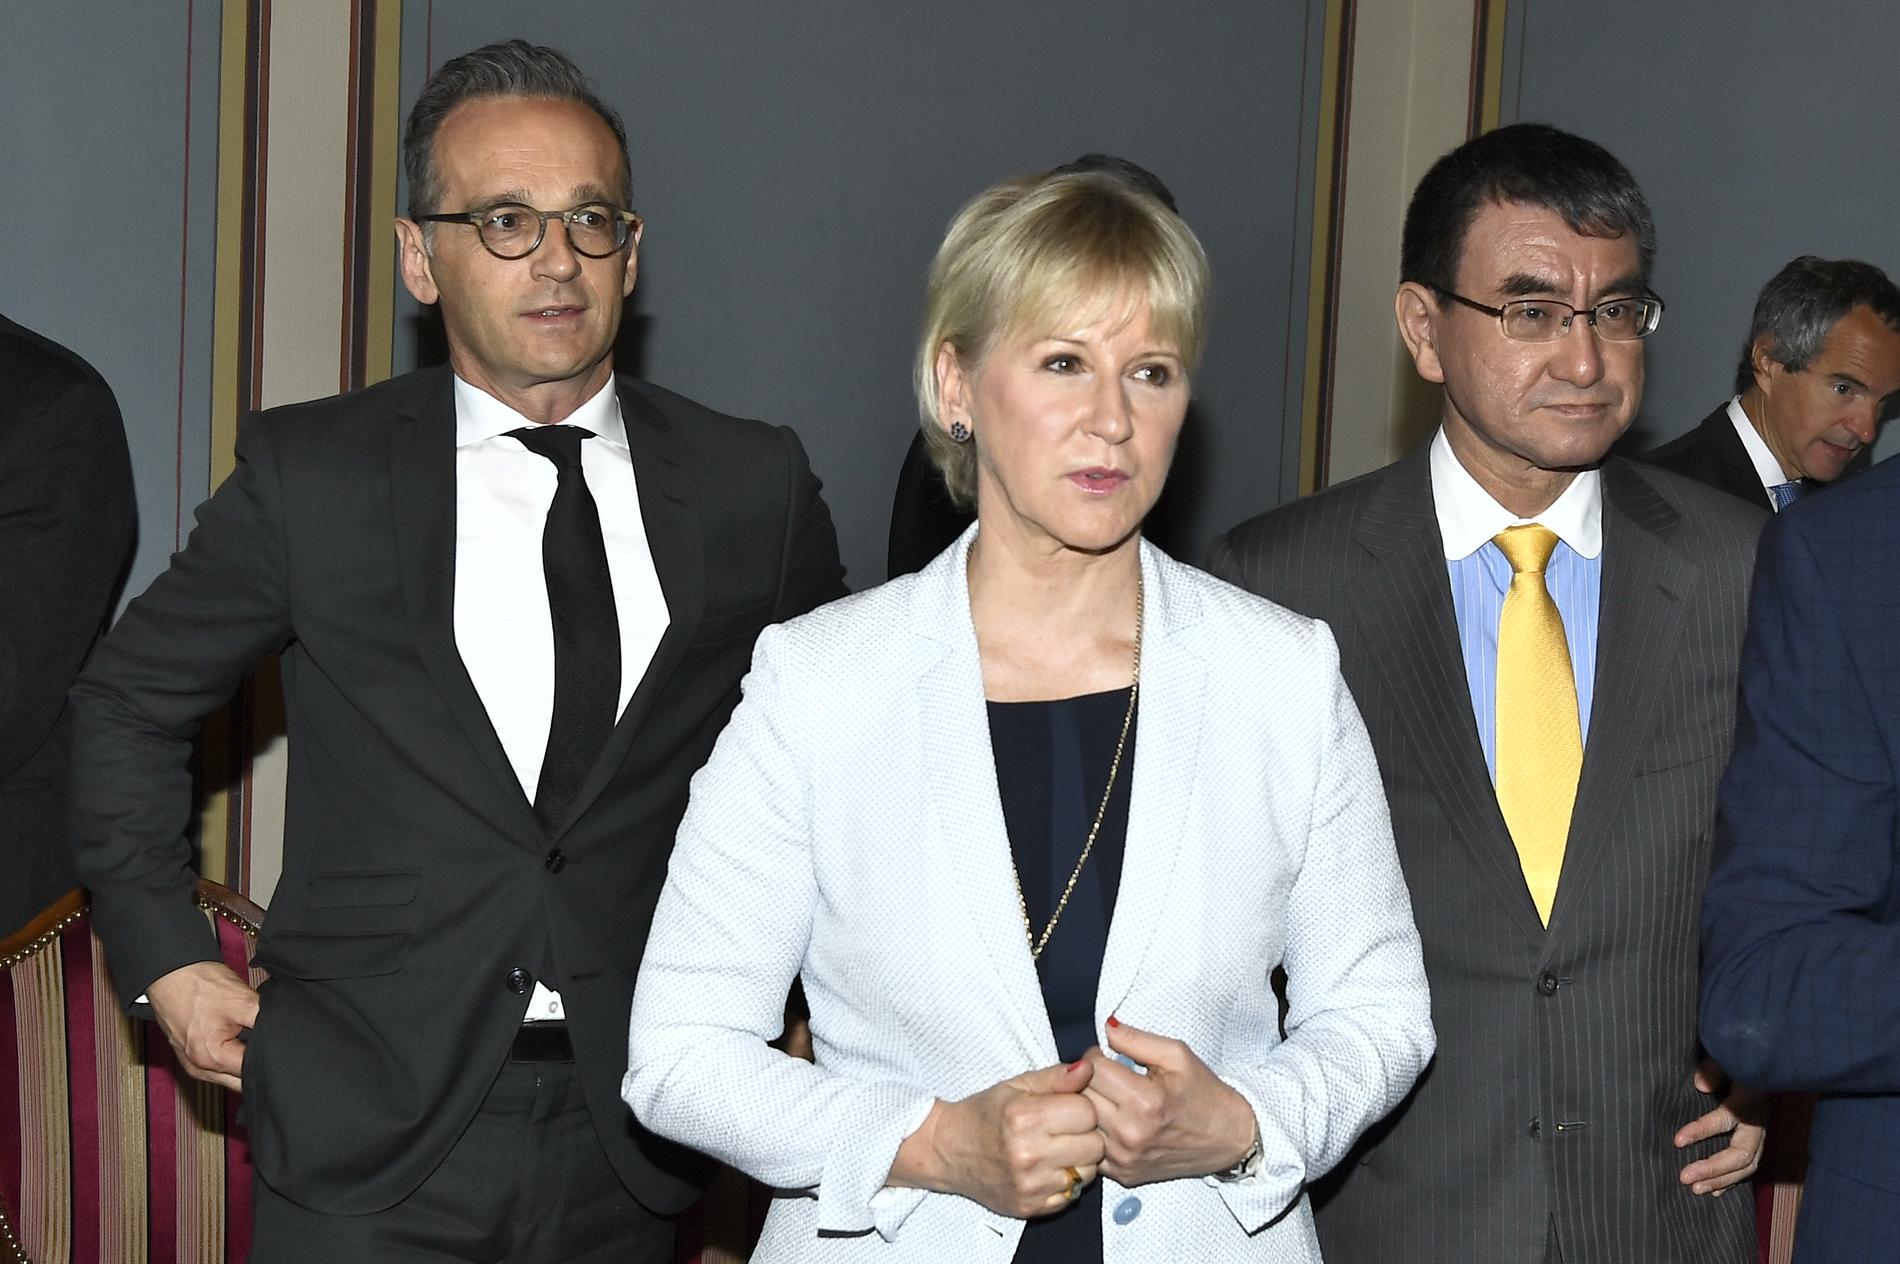 Sveriges utrikesminister Margot Wallström med sina kollegor Heiko Maas från Tyskland och Taro Kono från Japan.